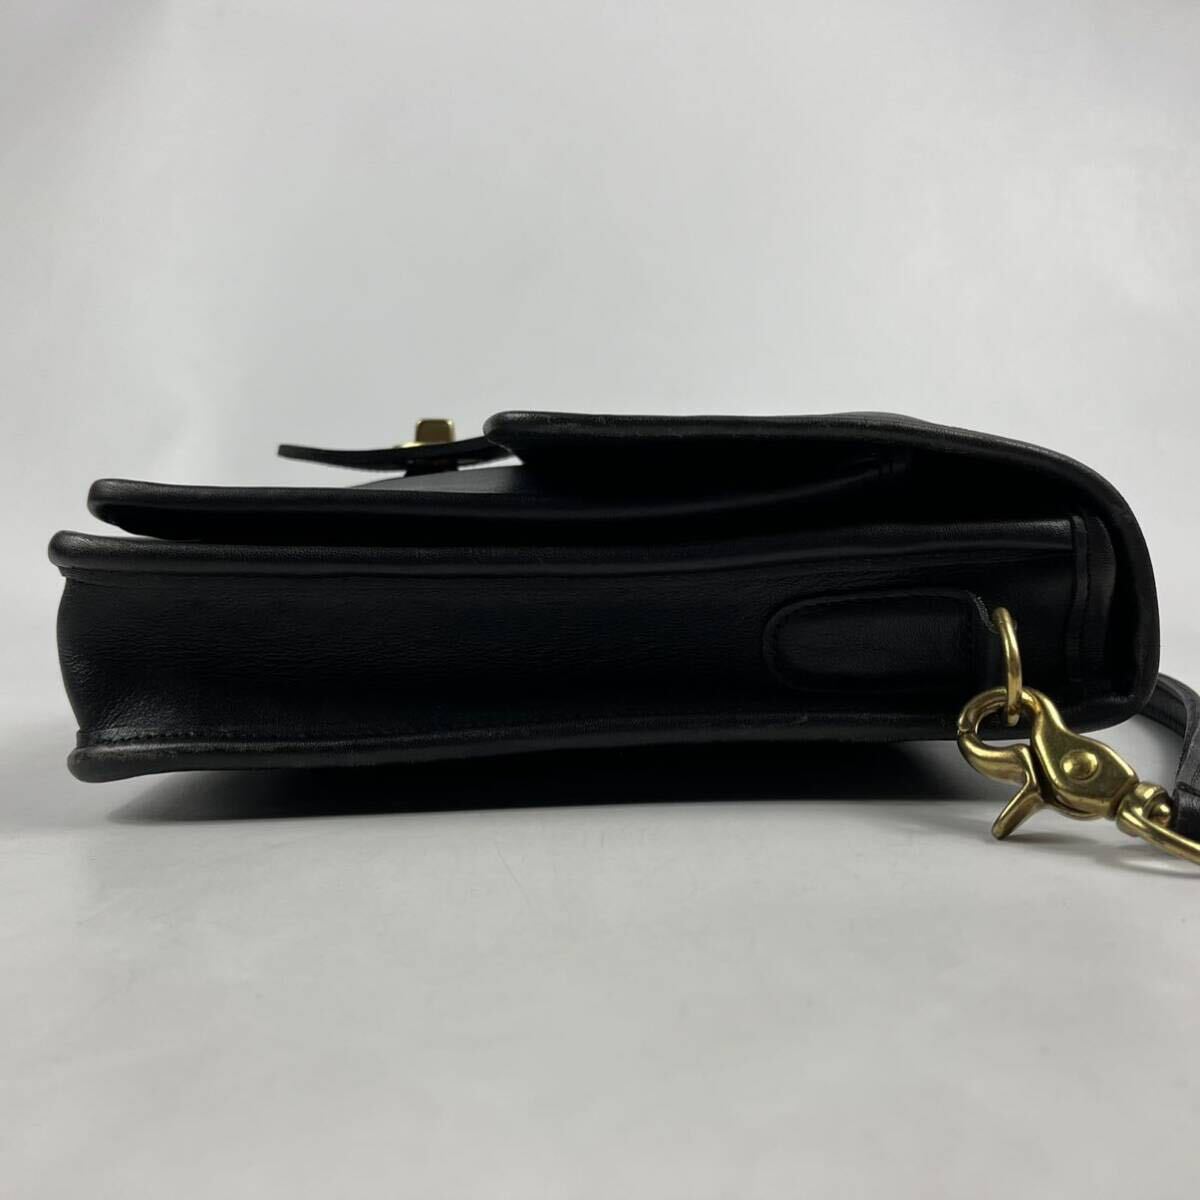 1 jpy ~[ hard-to-find goods ] OLD COACH Old Coach handbag 2way diagonal ..* black black Turn lock type shoulder bag original leather 